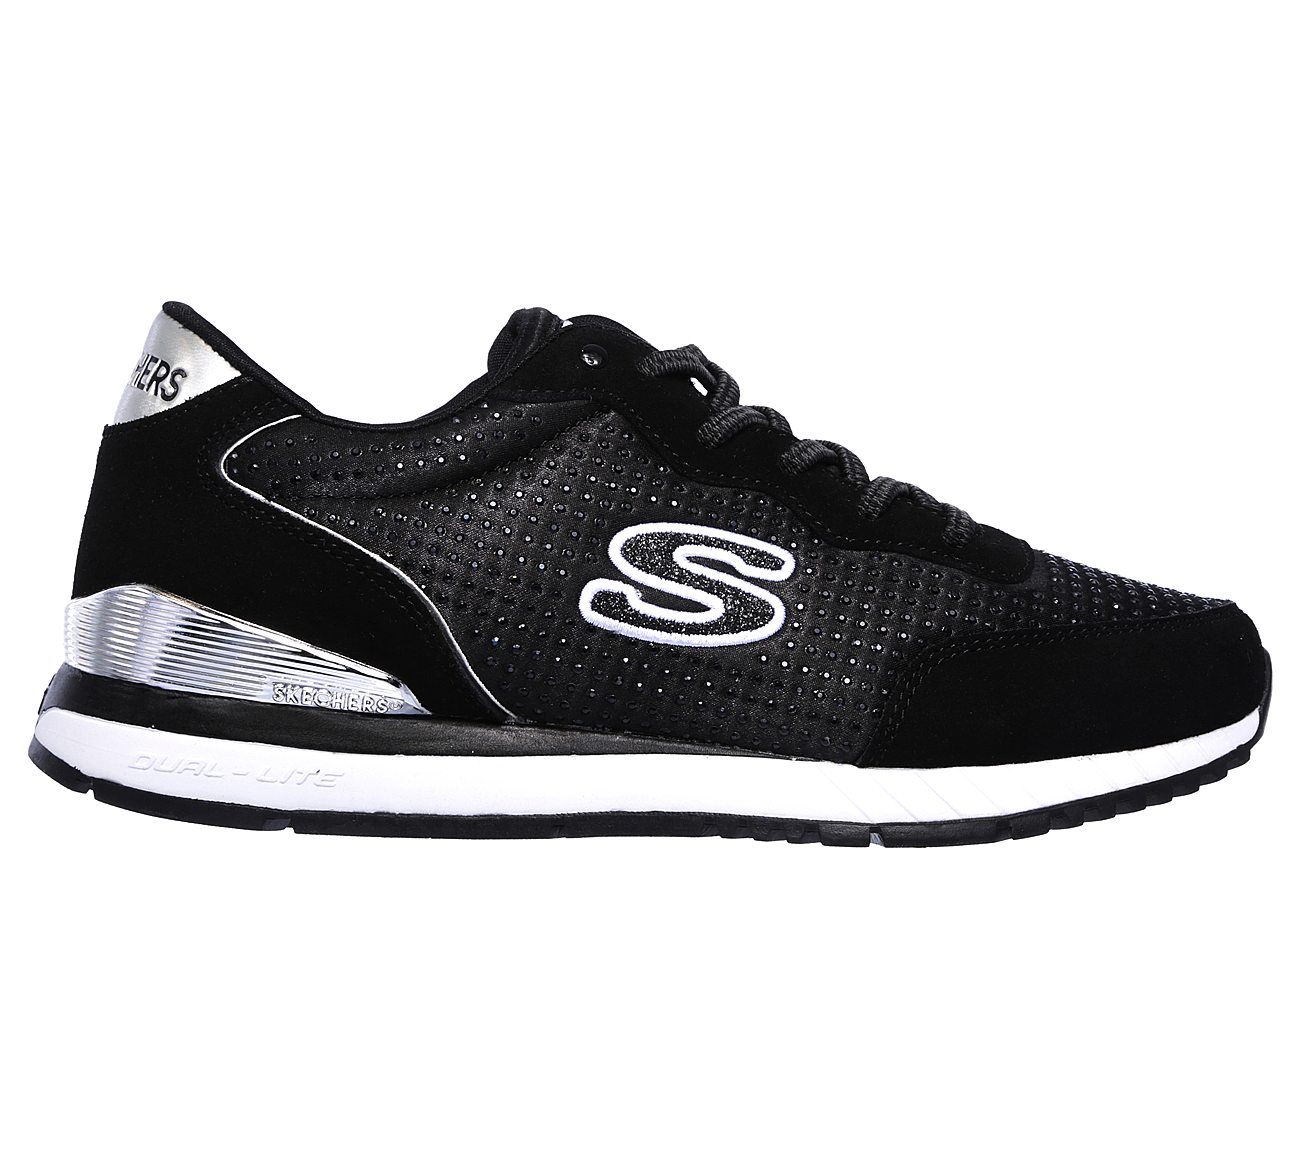 Buy SKECHERS Sunlite - Vintage Sparkle Originals Shoes only $40.00